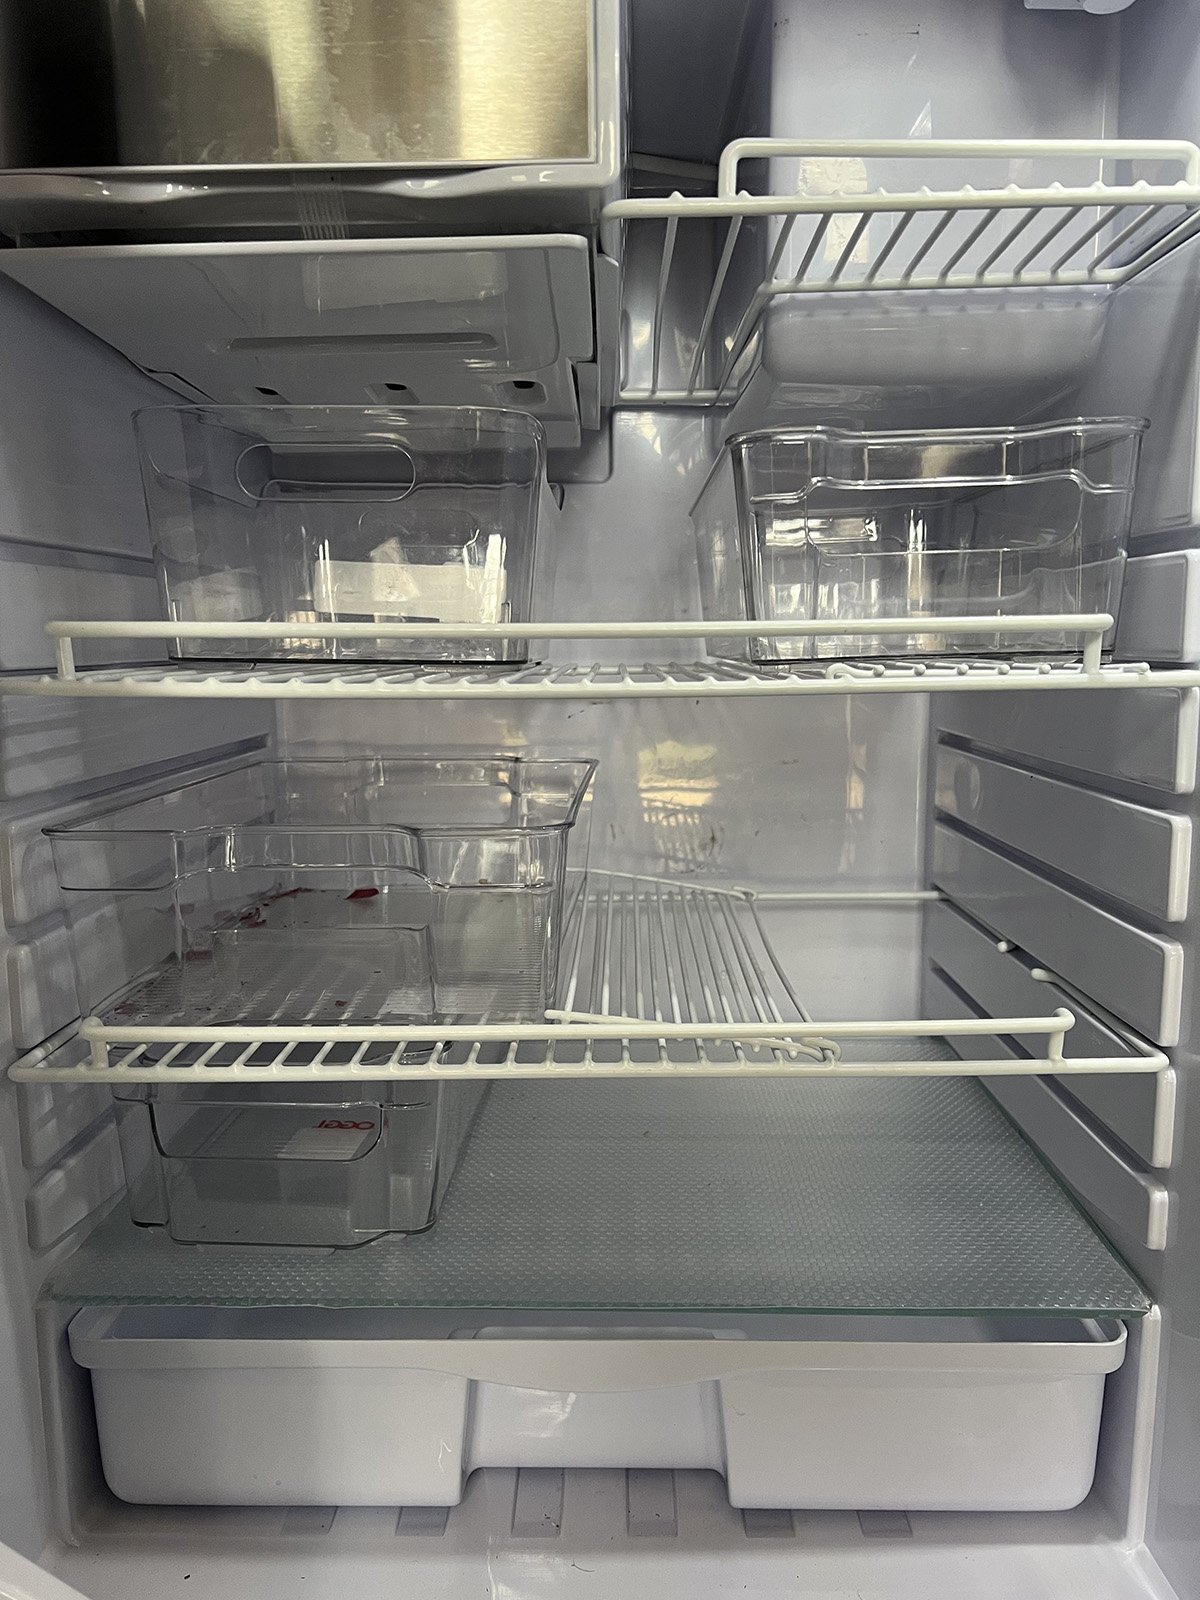 Plastic Bins for Organizing FWC Refrigerator